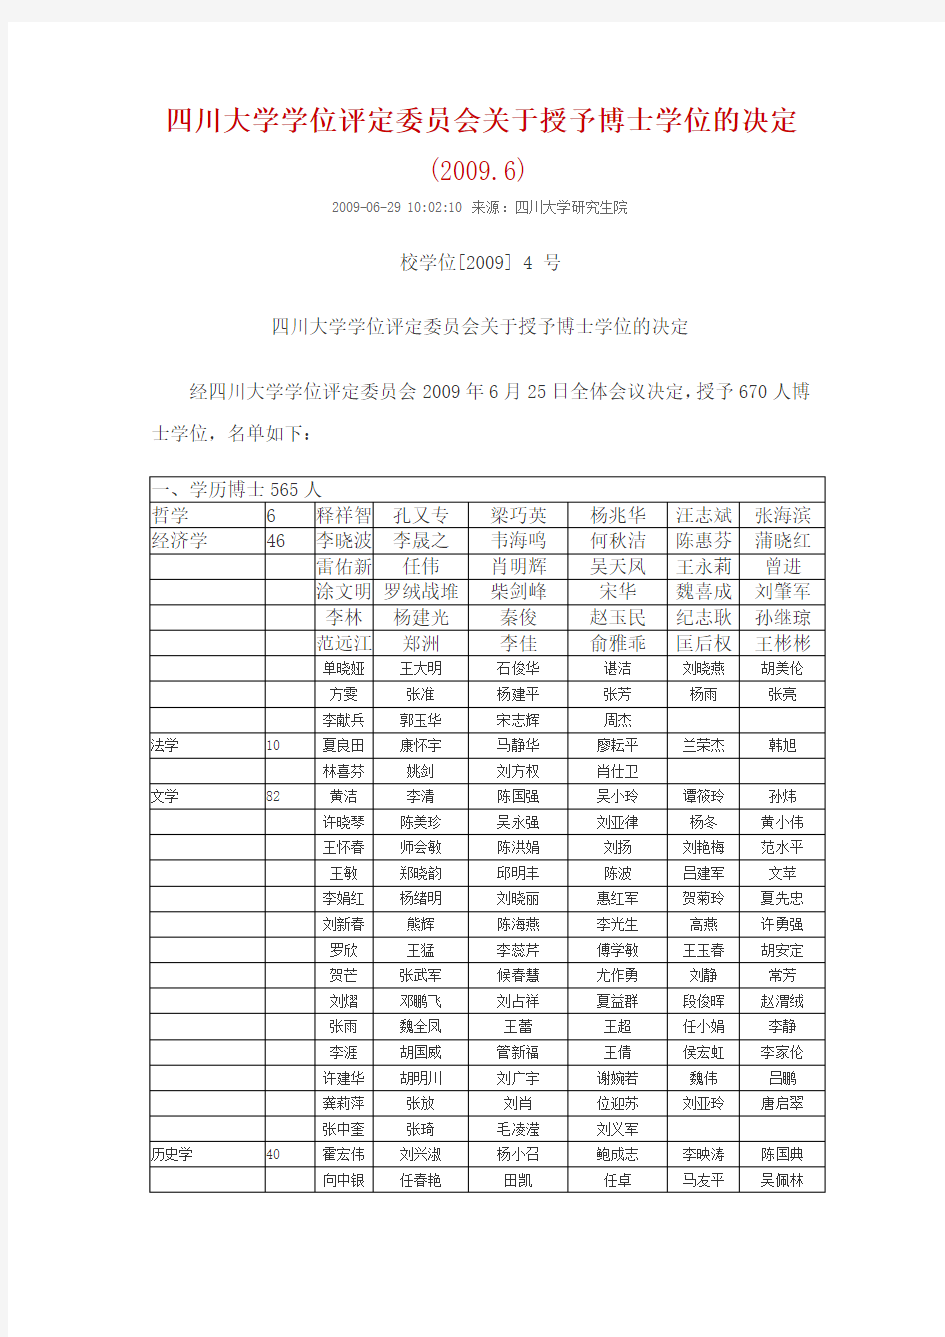 四川大学学位评定委员会关于授予博士的决定(2009—2010)